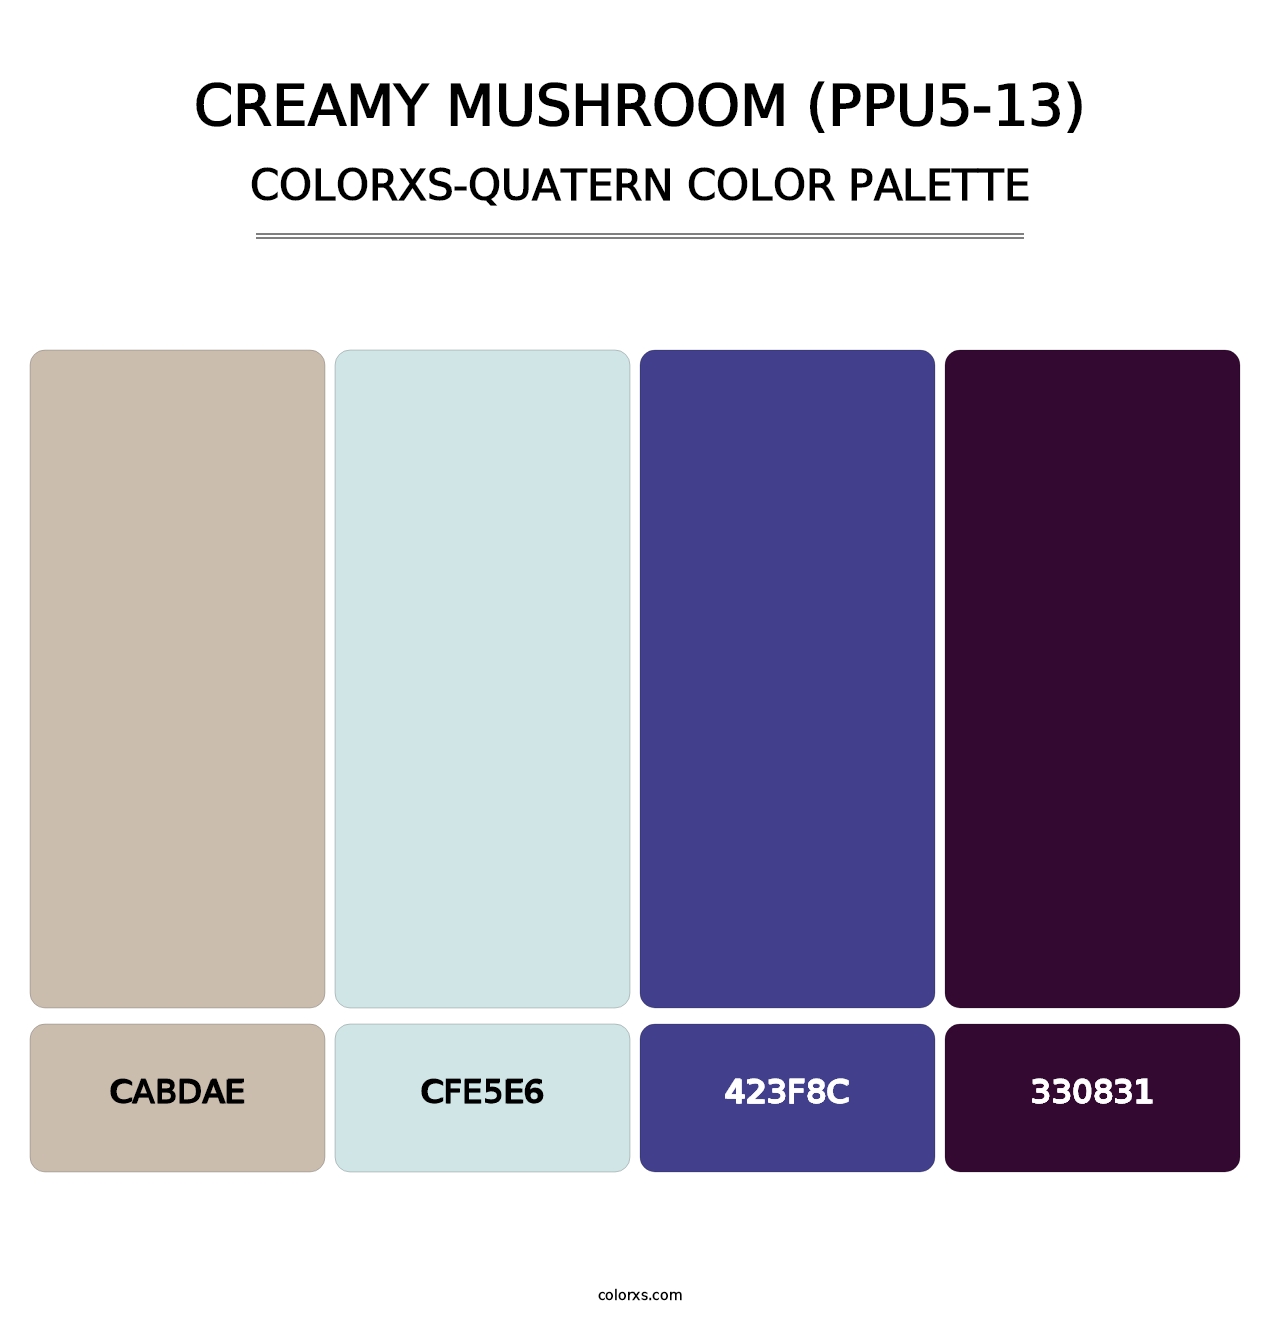 Creamy Mushroom (PPU5-13) - Colorxs Quatern Palette